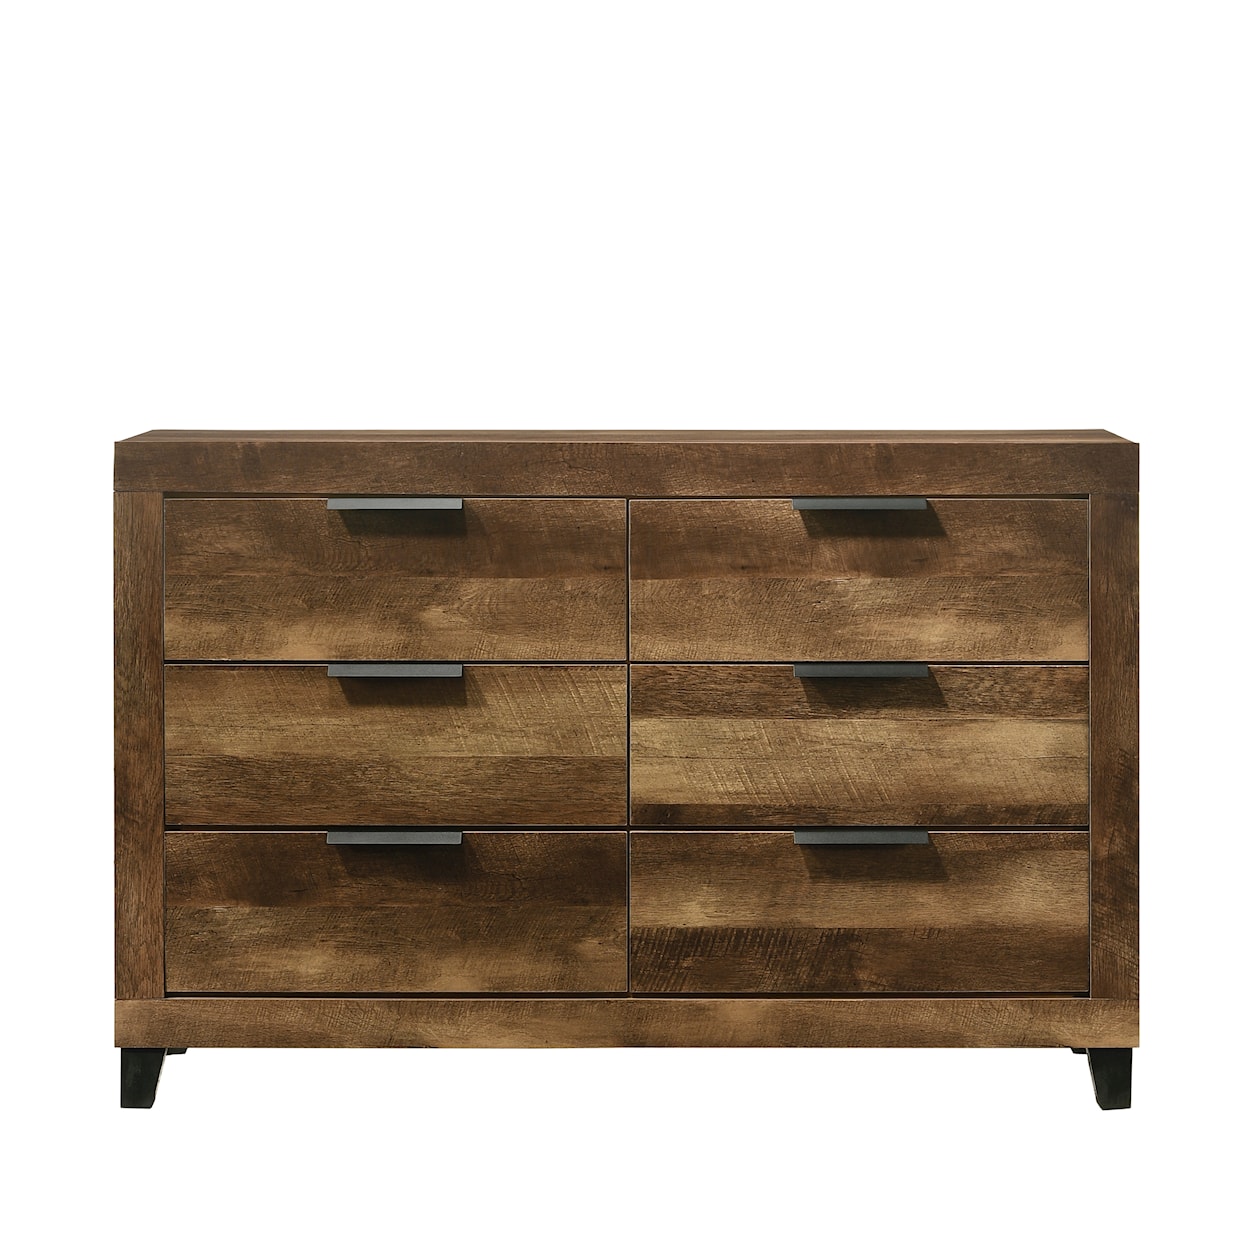 Acme Furniture Morales Dresser